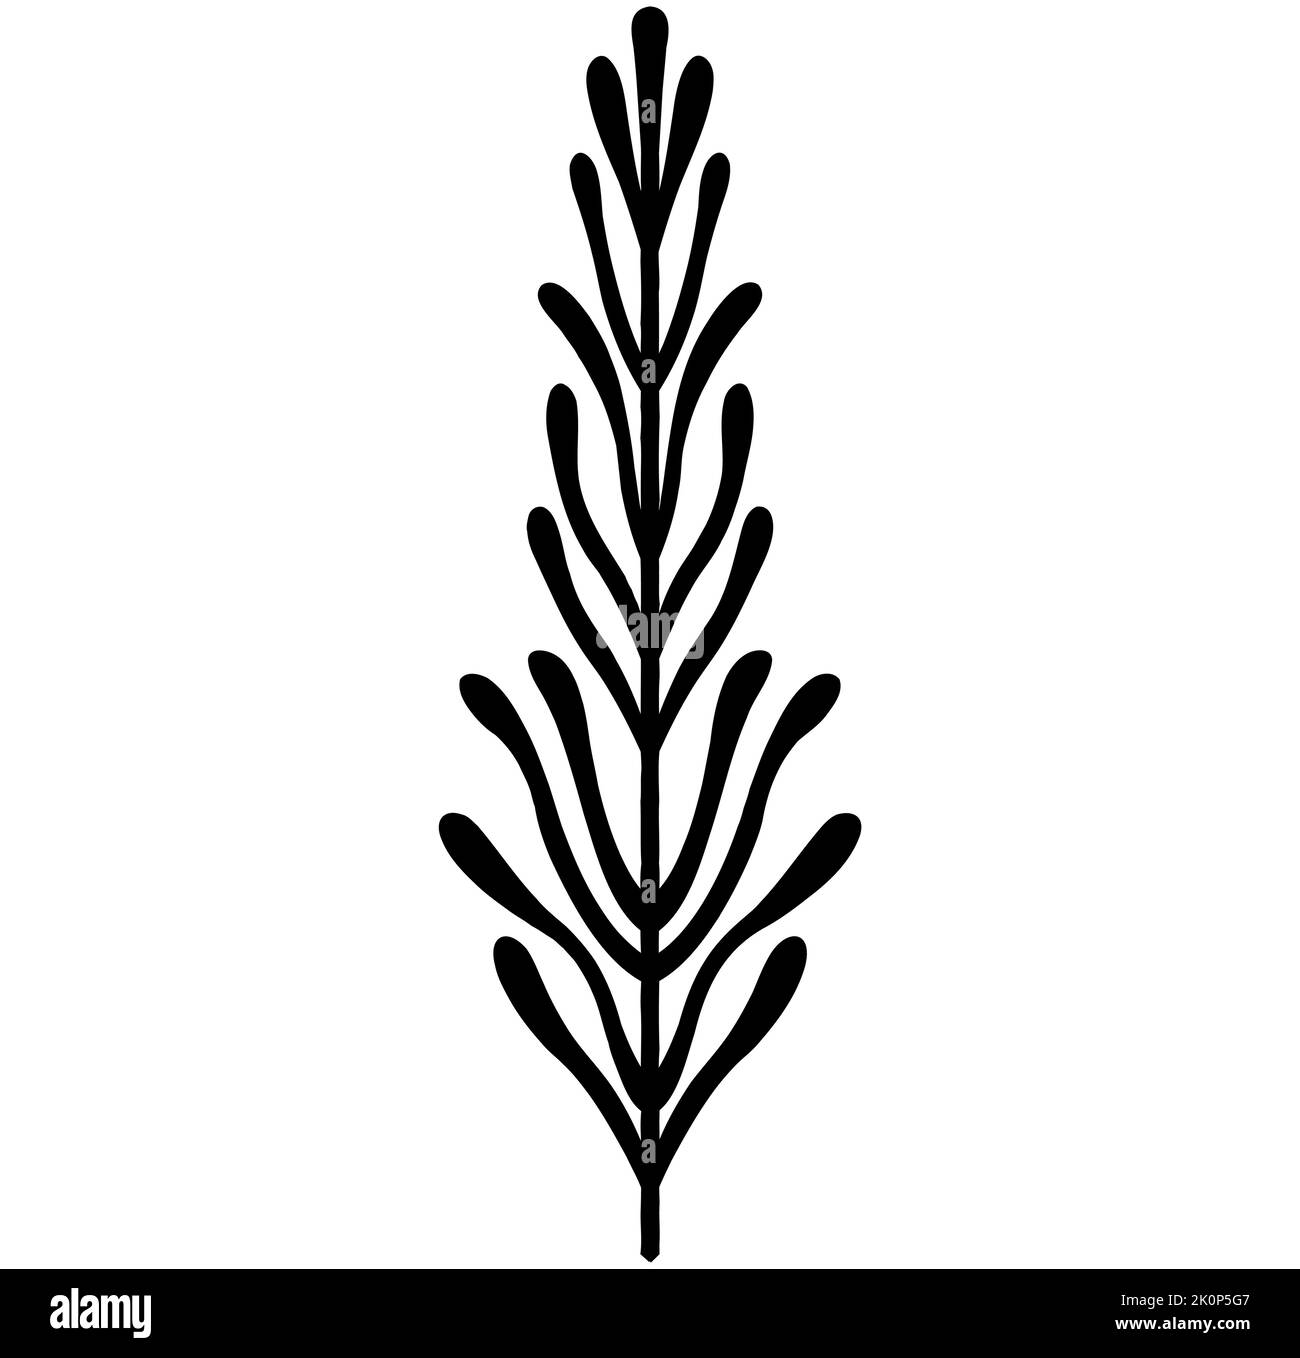 Nero vettore foglia tropicale silhouette disegnate a mano isolato su sfondo bianco, fogliame vegetale Illustrazione Vettoriale